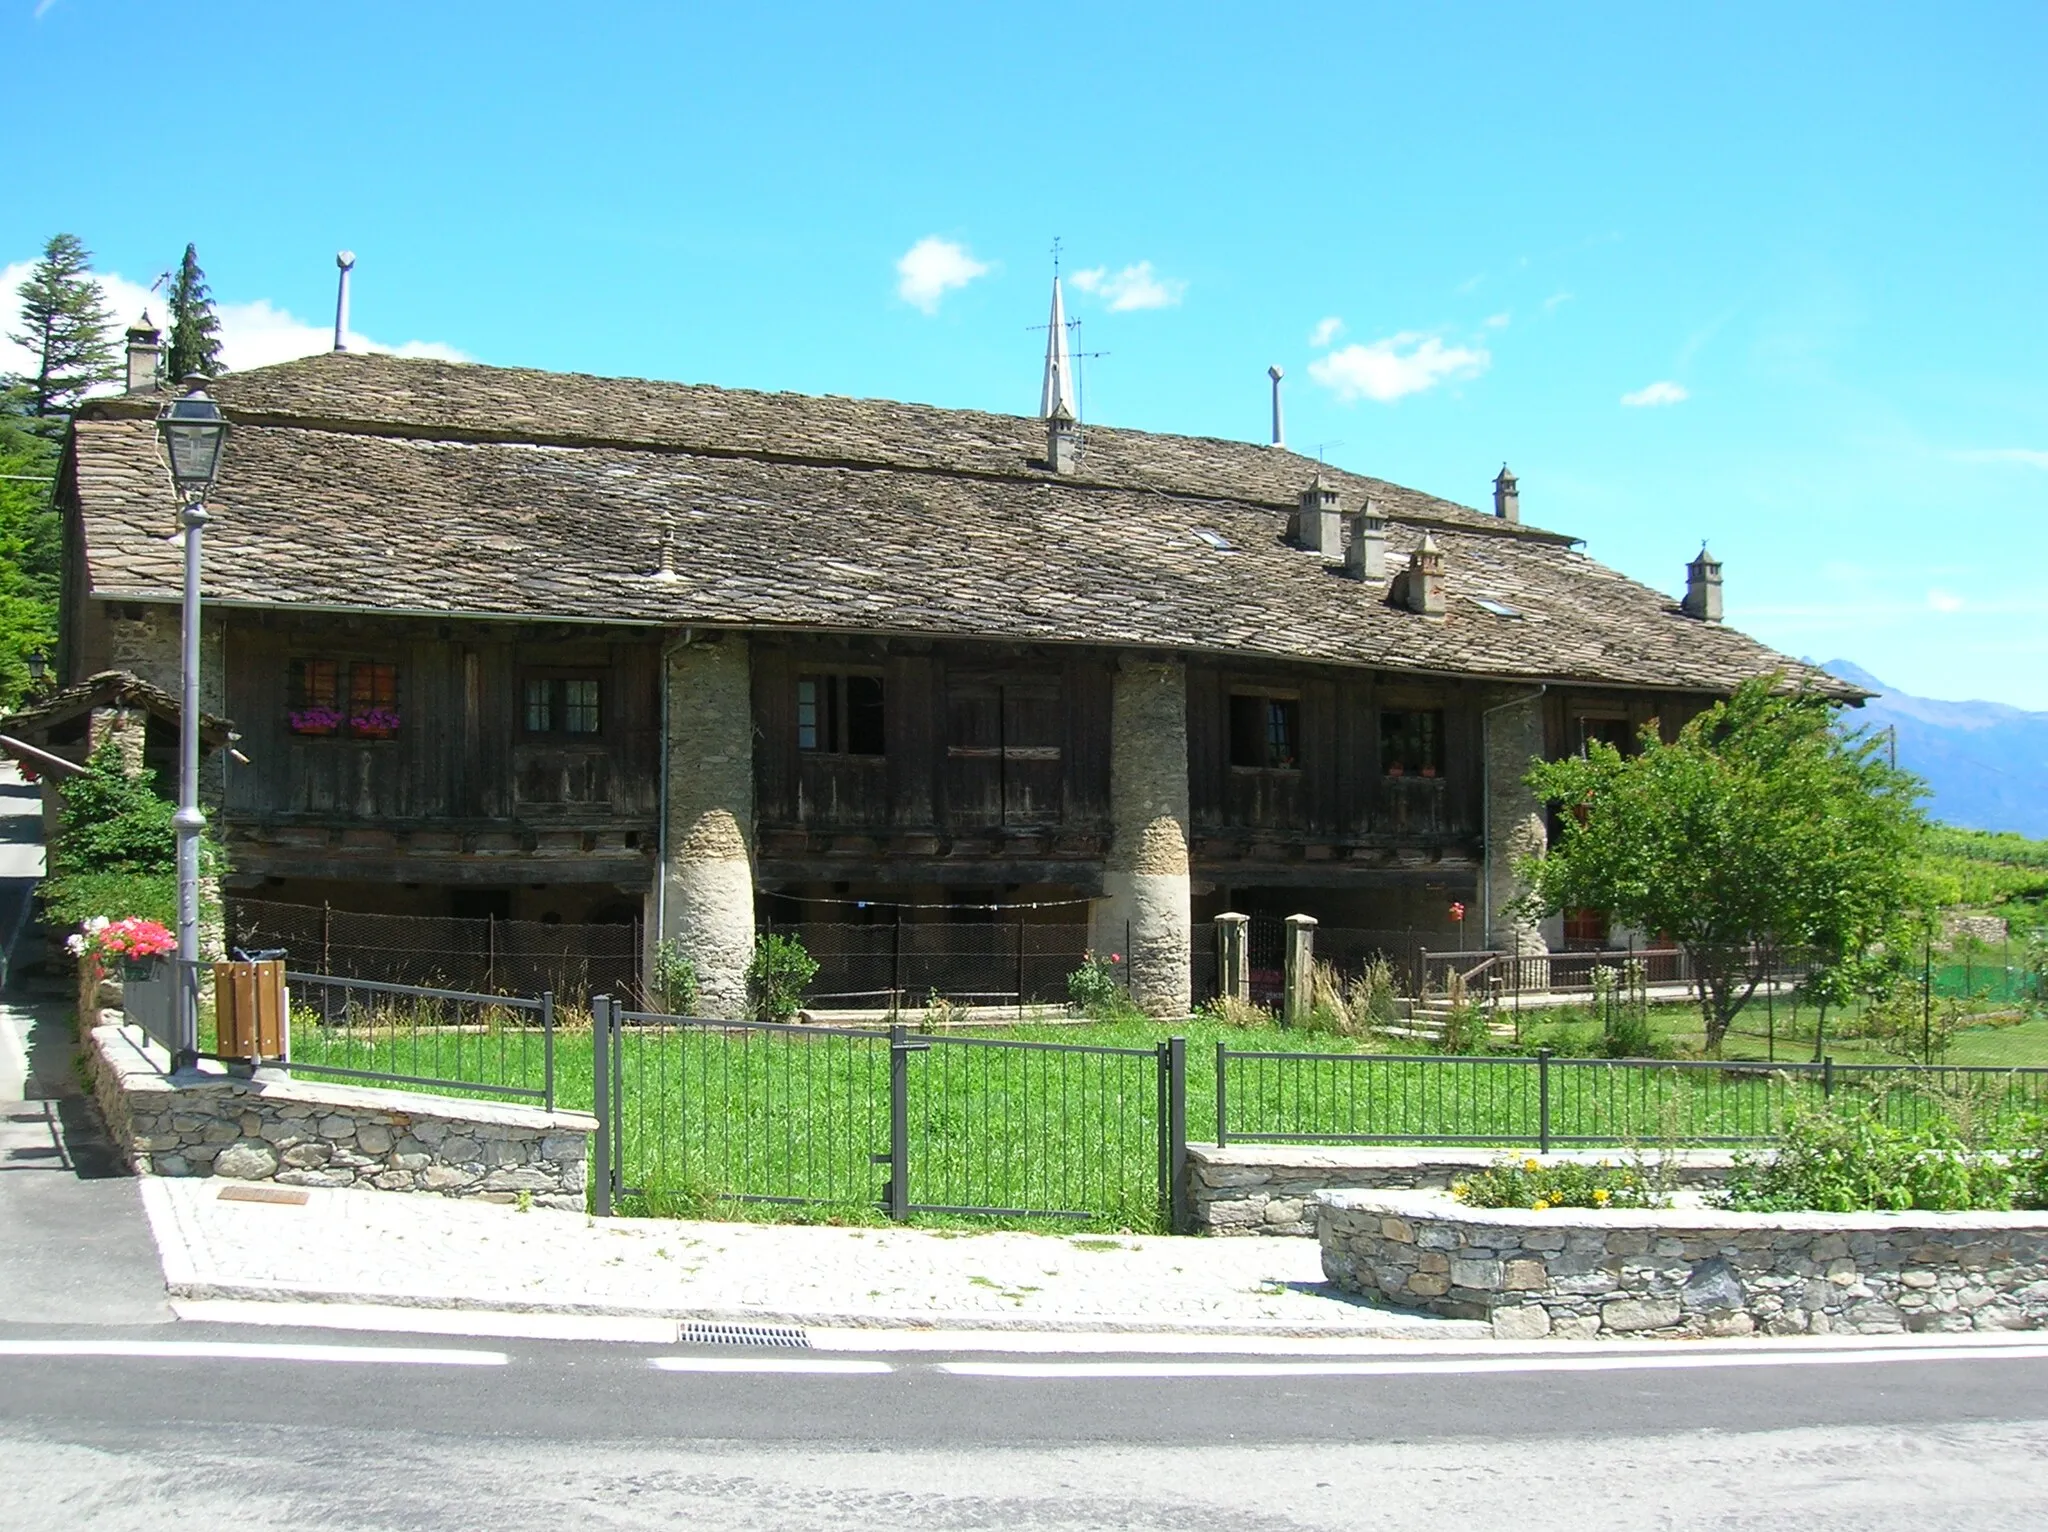 Photo showing: Cascina "L'Ola", antica scuderia del vicino castello di Introd. Ad Introd, Valle d'Aosta, Italia.